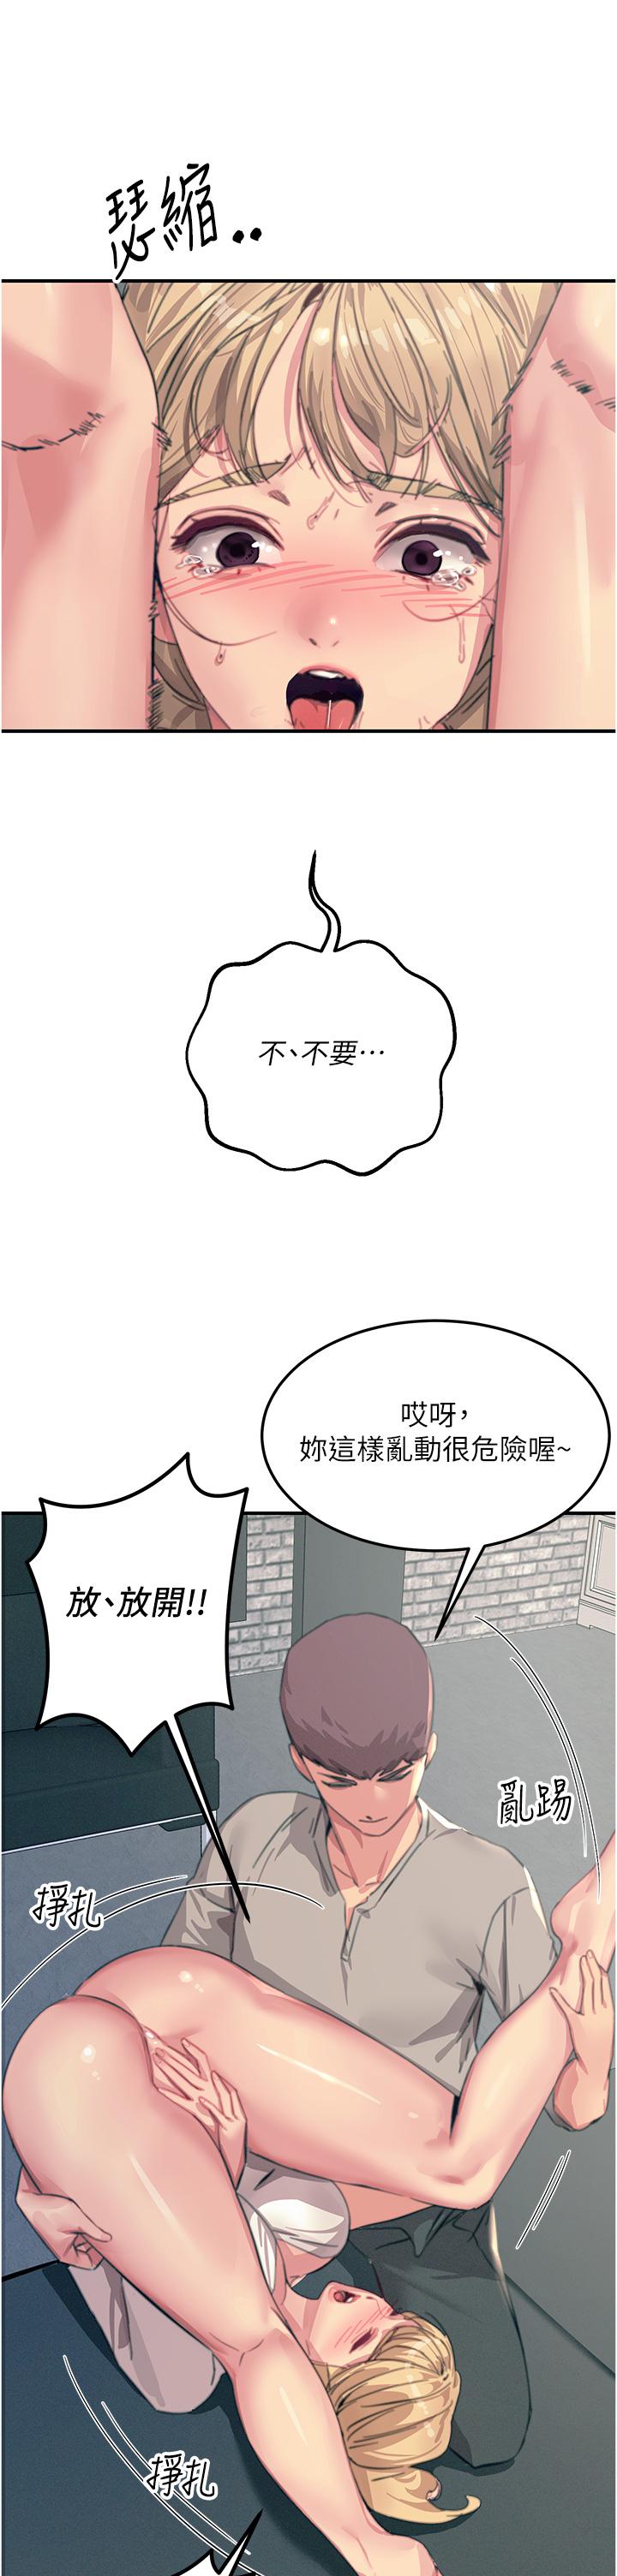 韩国污漫画 觸電大師 第56话-自己的手指v.s.巨大肉棒 29